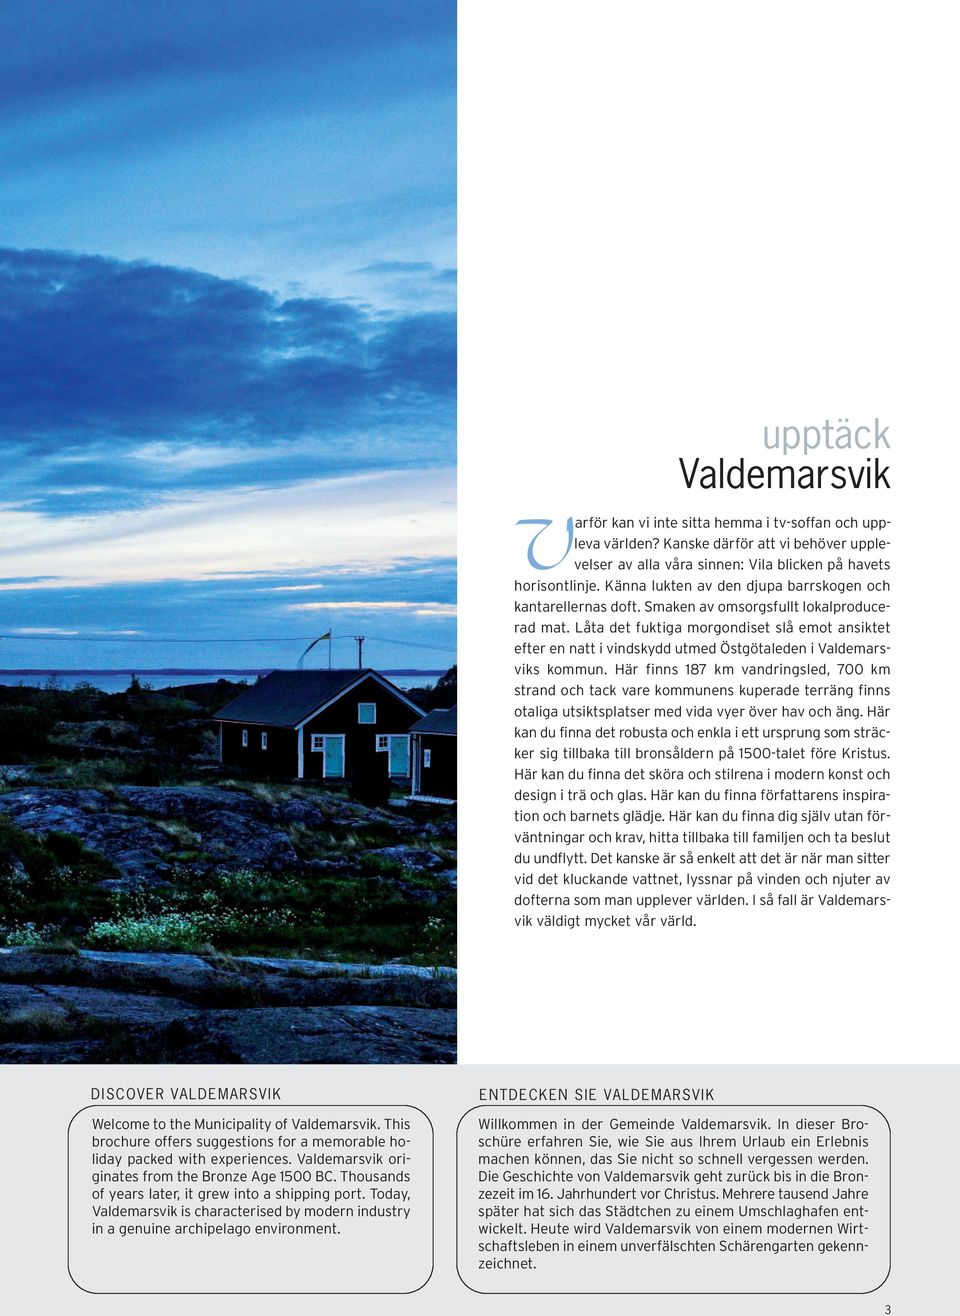 Låta det fuktiga morgondiset slå emot ansiktet efter en natt i vindskydd utmed Östgötaleden i Valdemarsviks kommun.